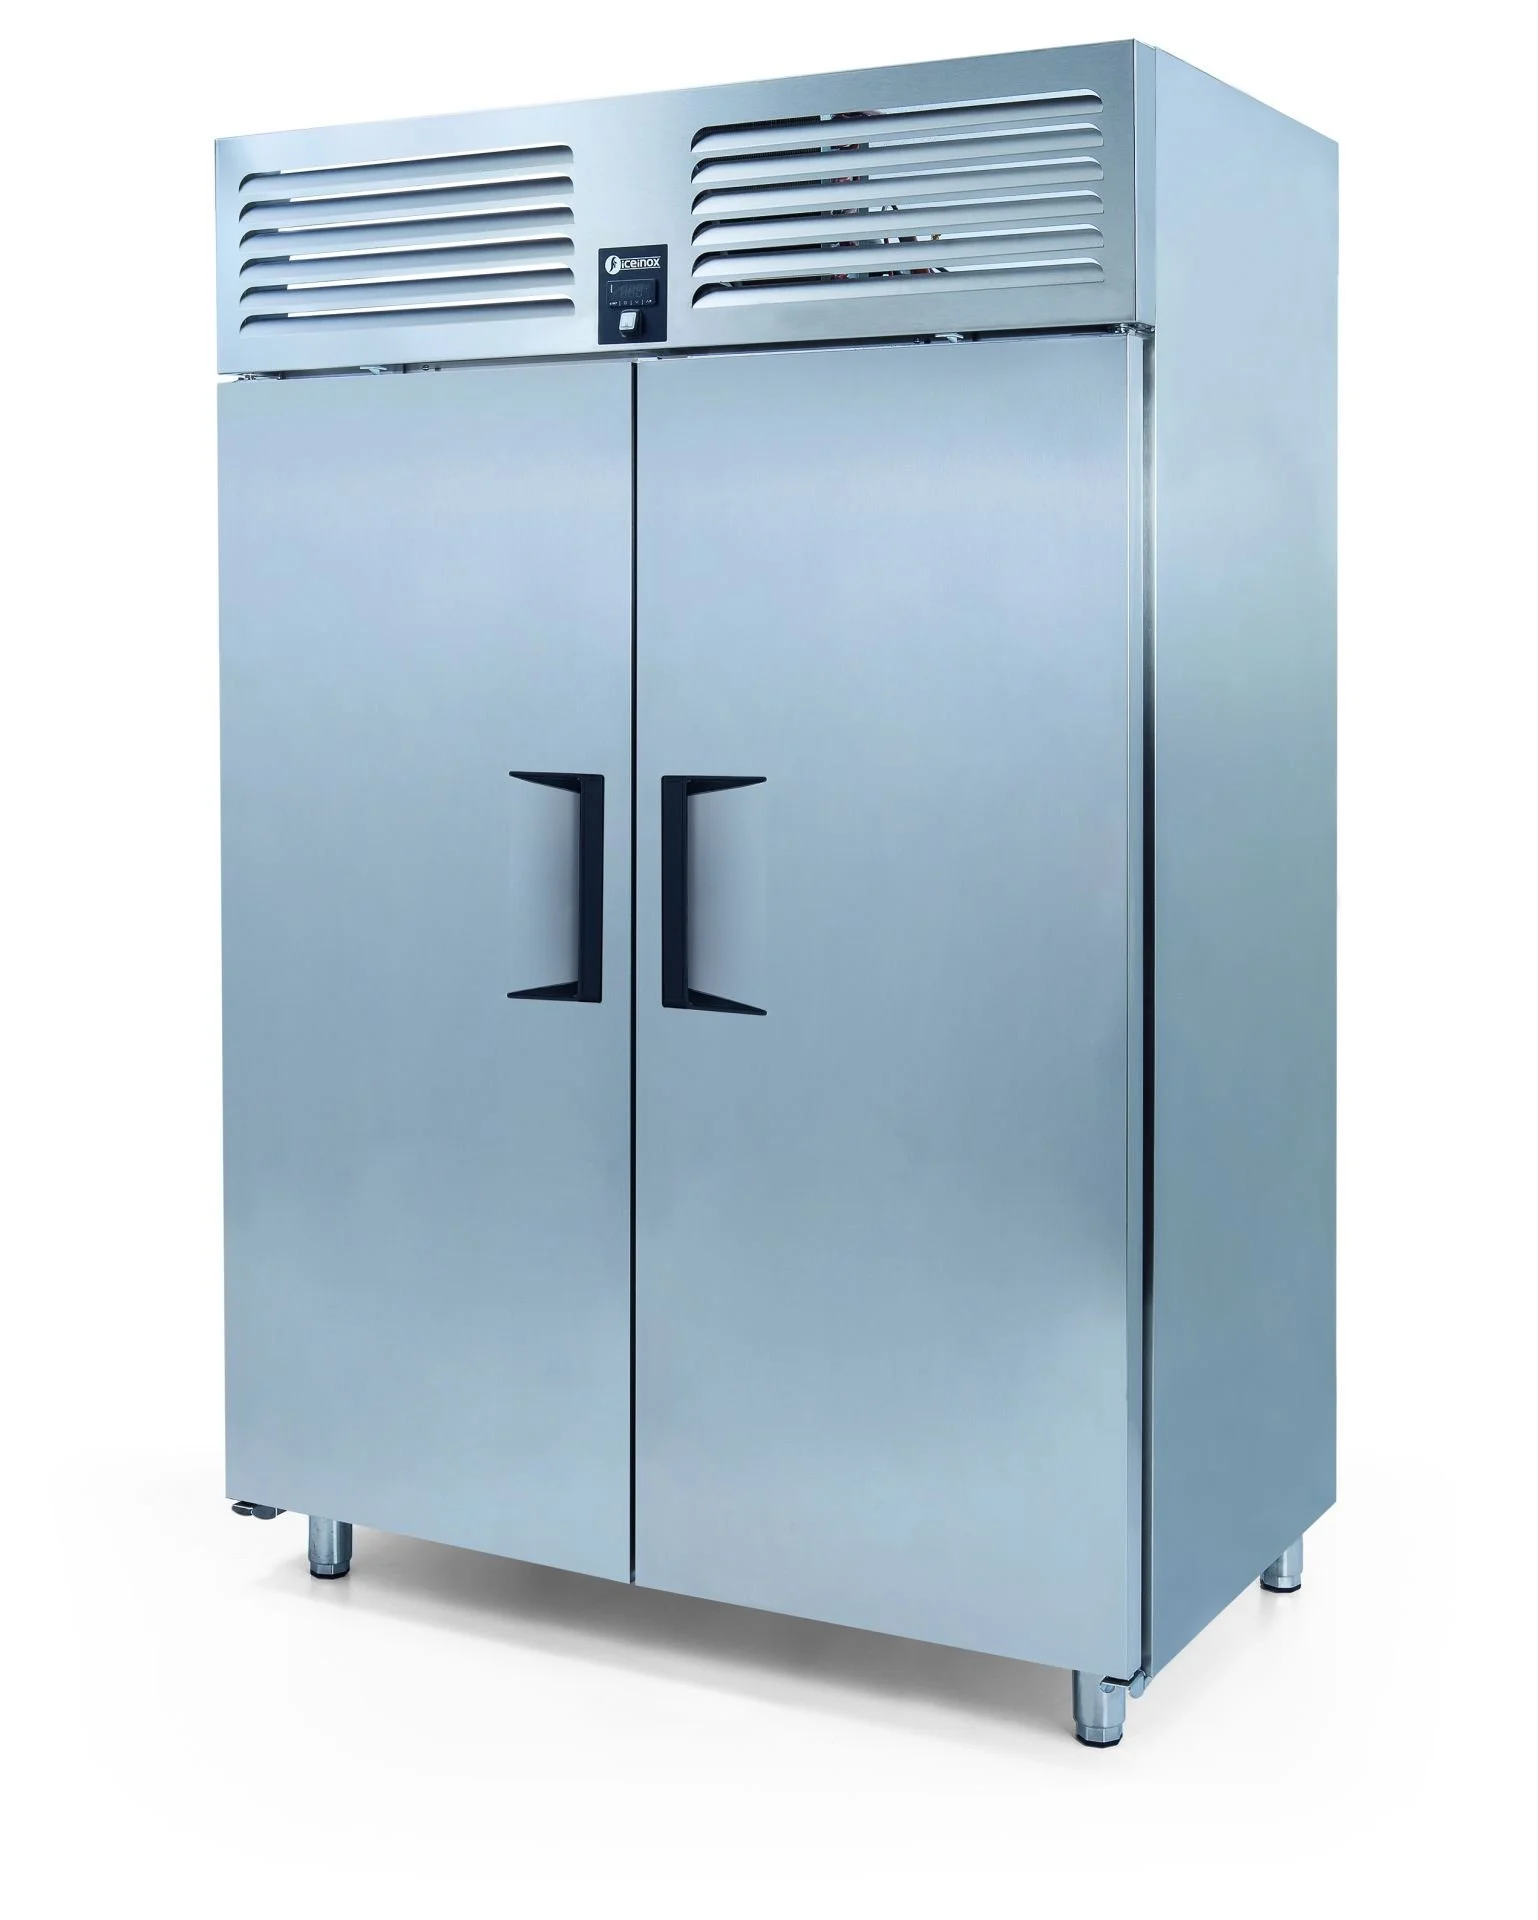 ICEINOX - Iceinox VTS 1150 CR Dikey Tip Snack Buzdolabı, 2 Kapılı, 1150 L